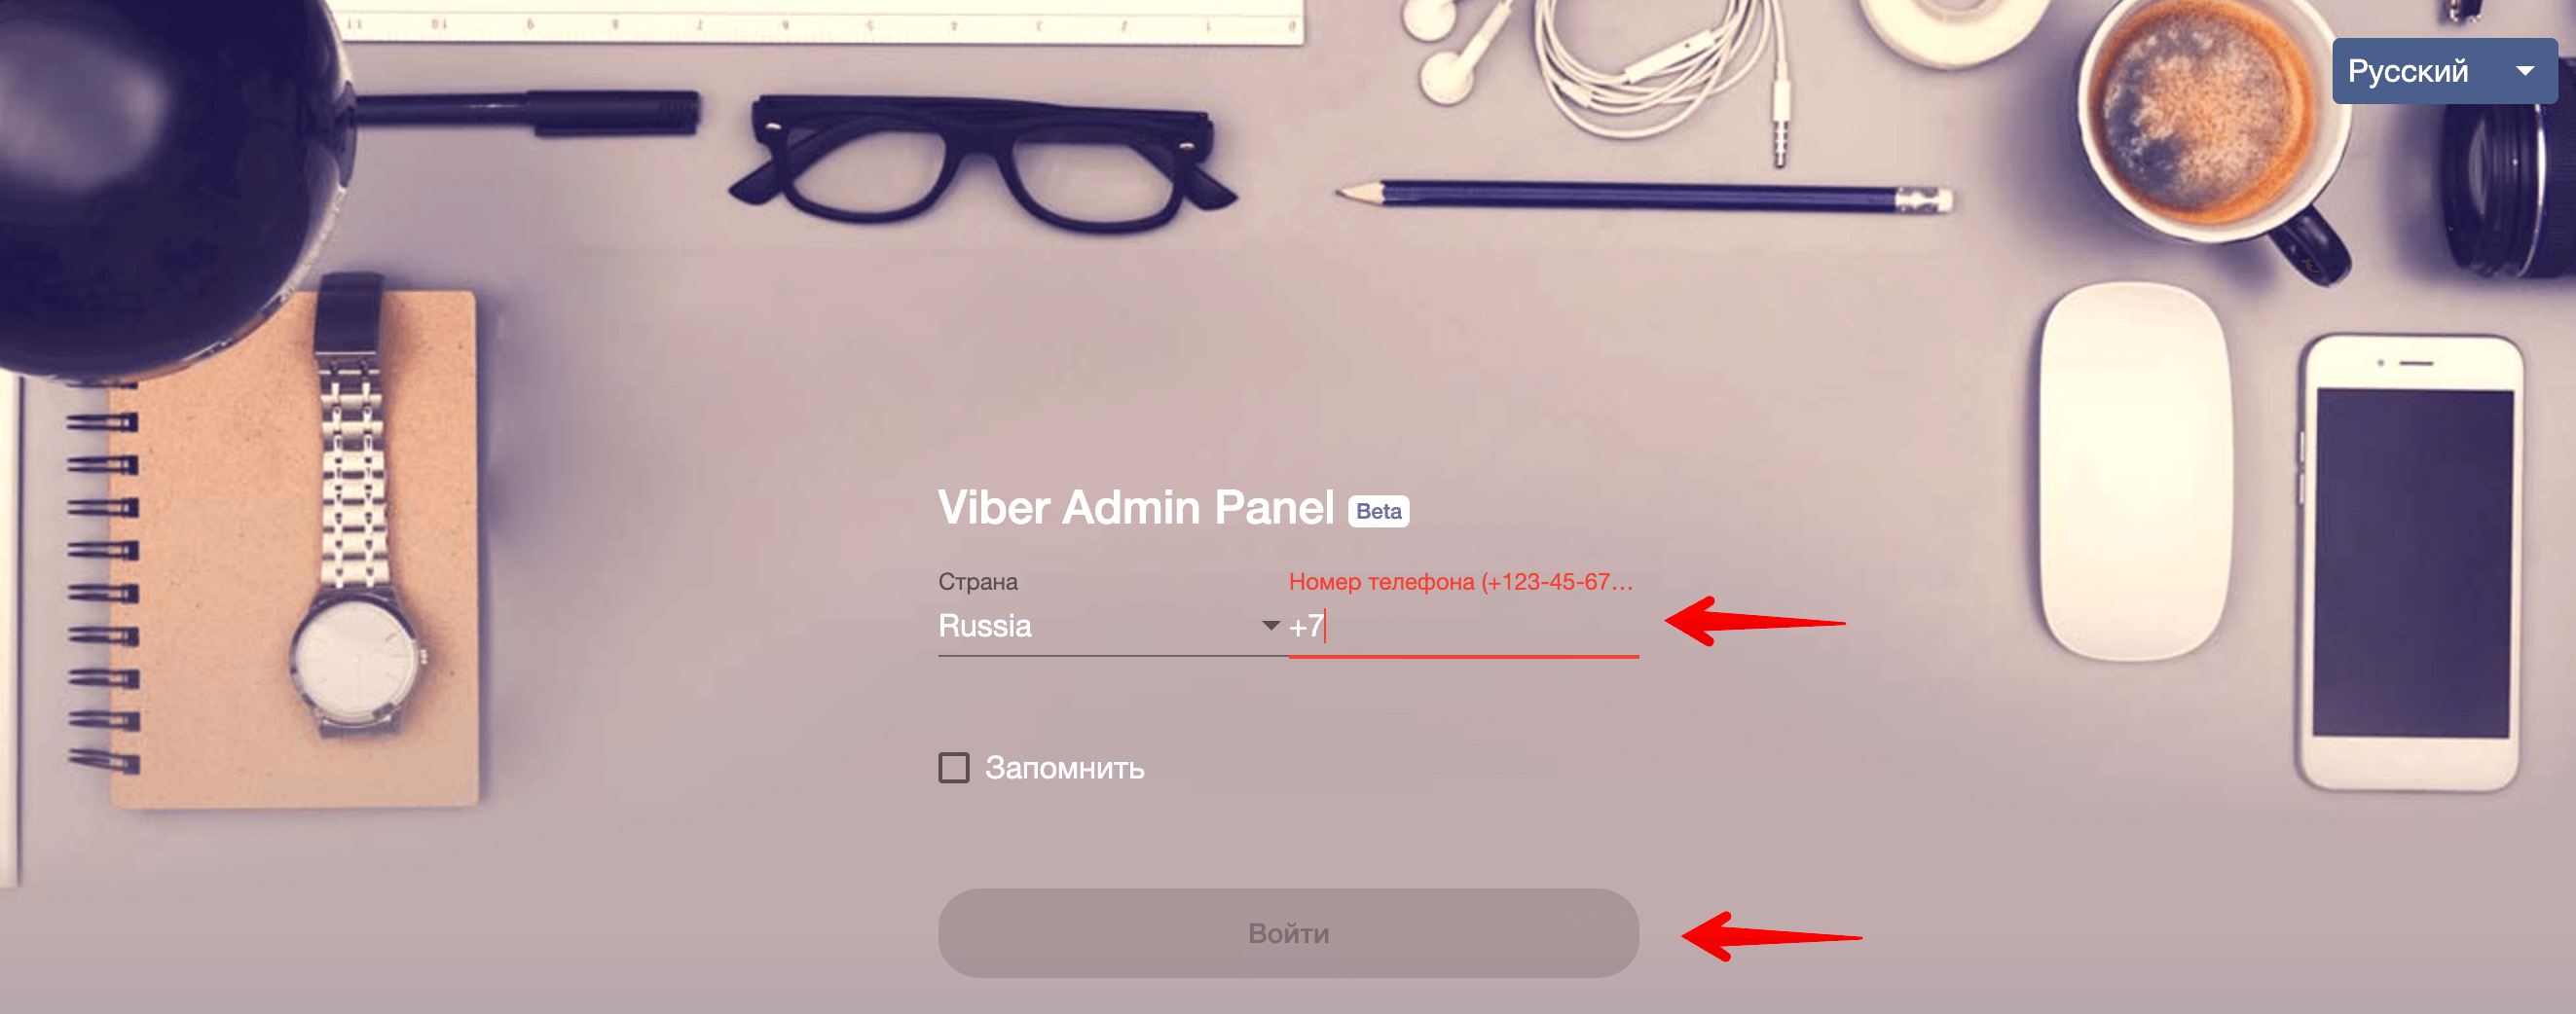 15 Viber - войдите в админ-панель.png